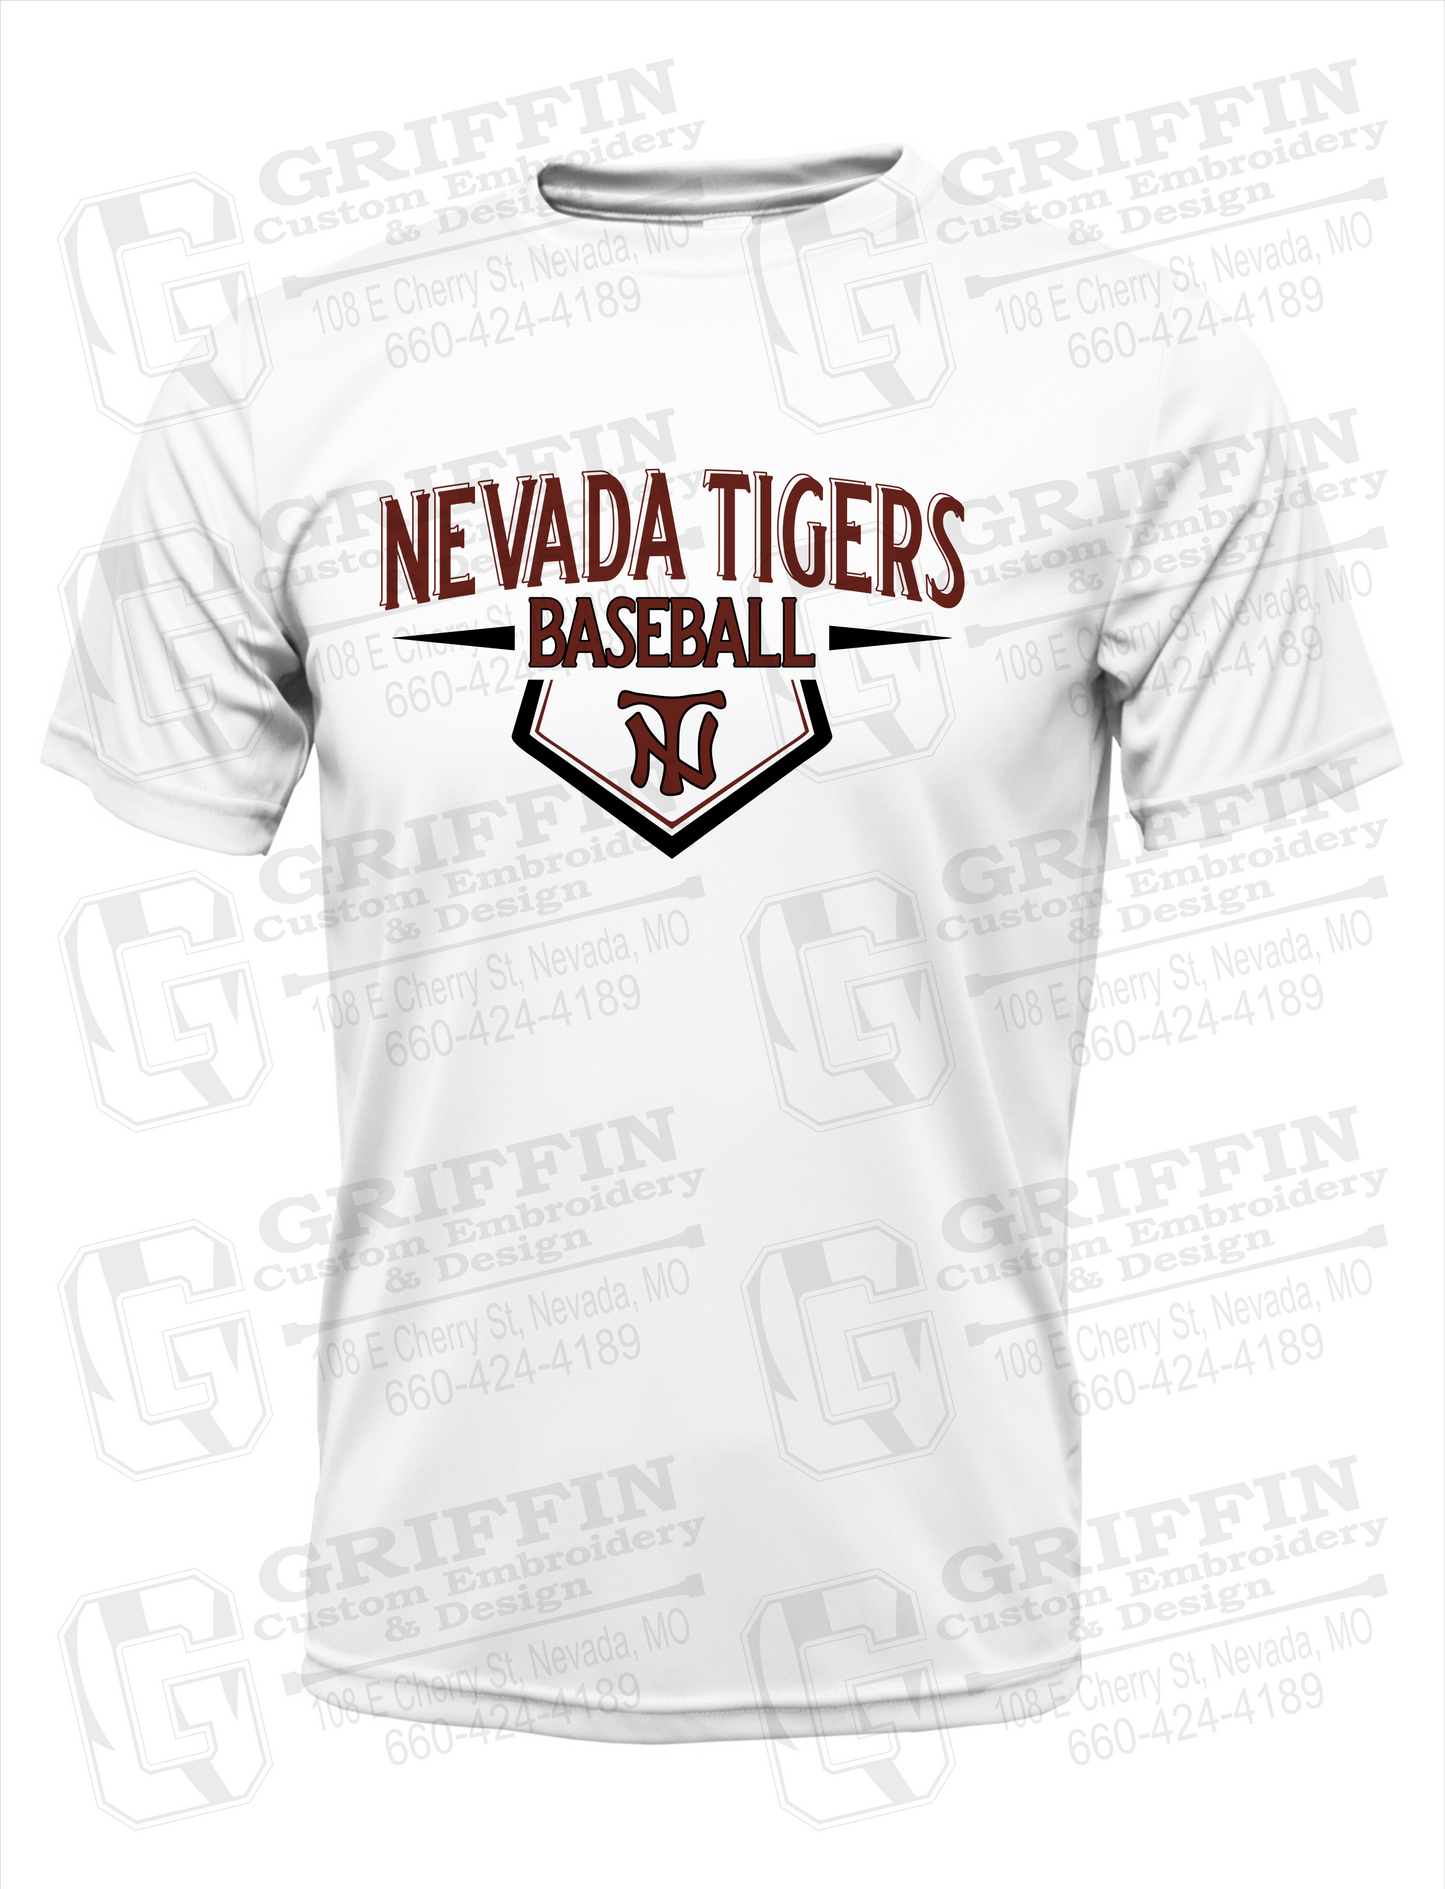 Nevada Tigers 24-W Dry-Fit T-Shirt - Baseball